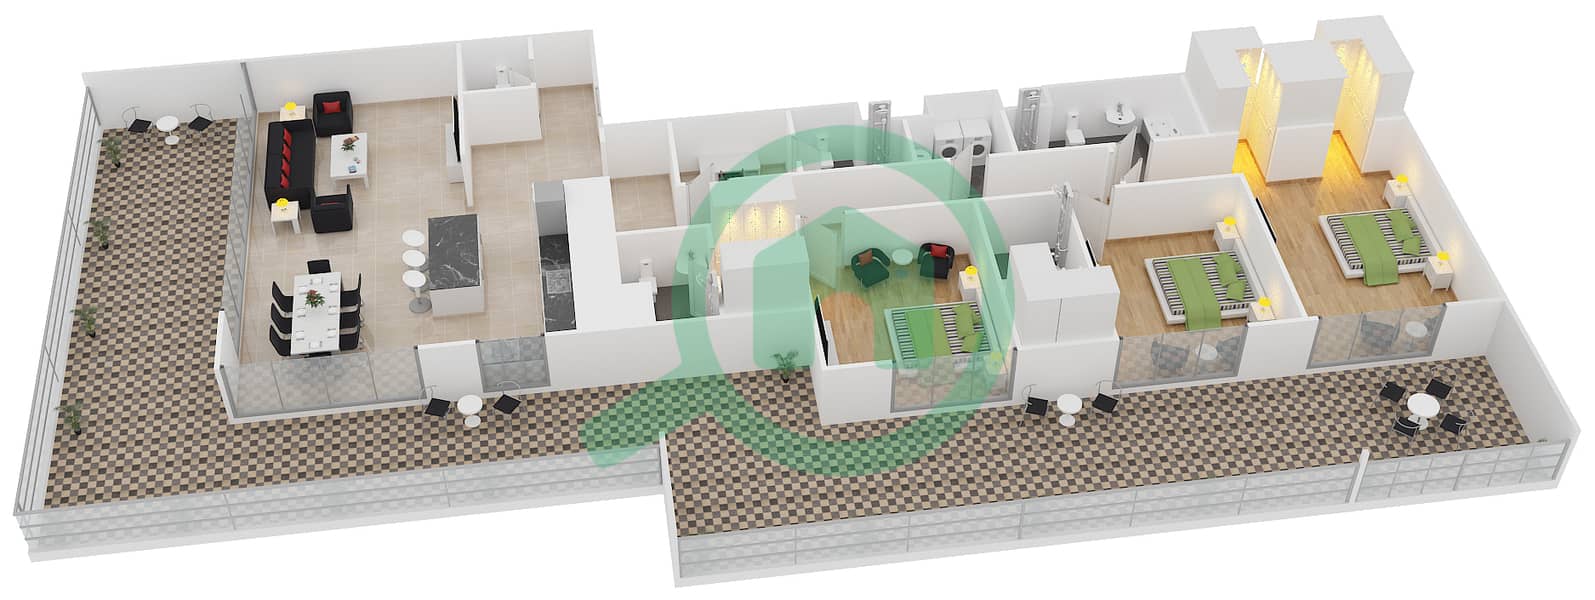 المخططات الطابقية لتصميم النموذج 13 شقة 3 غرف نوم - بلجرافيا interactive3D